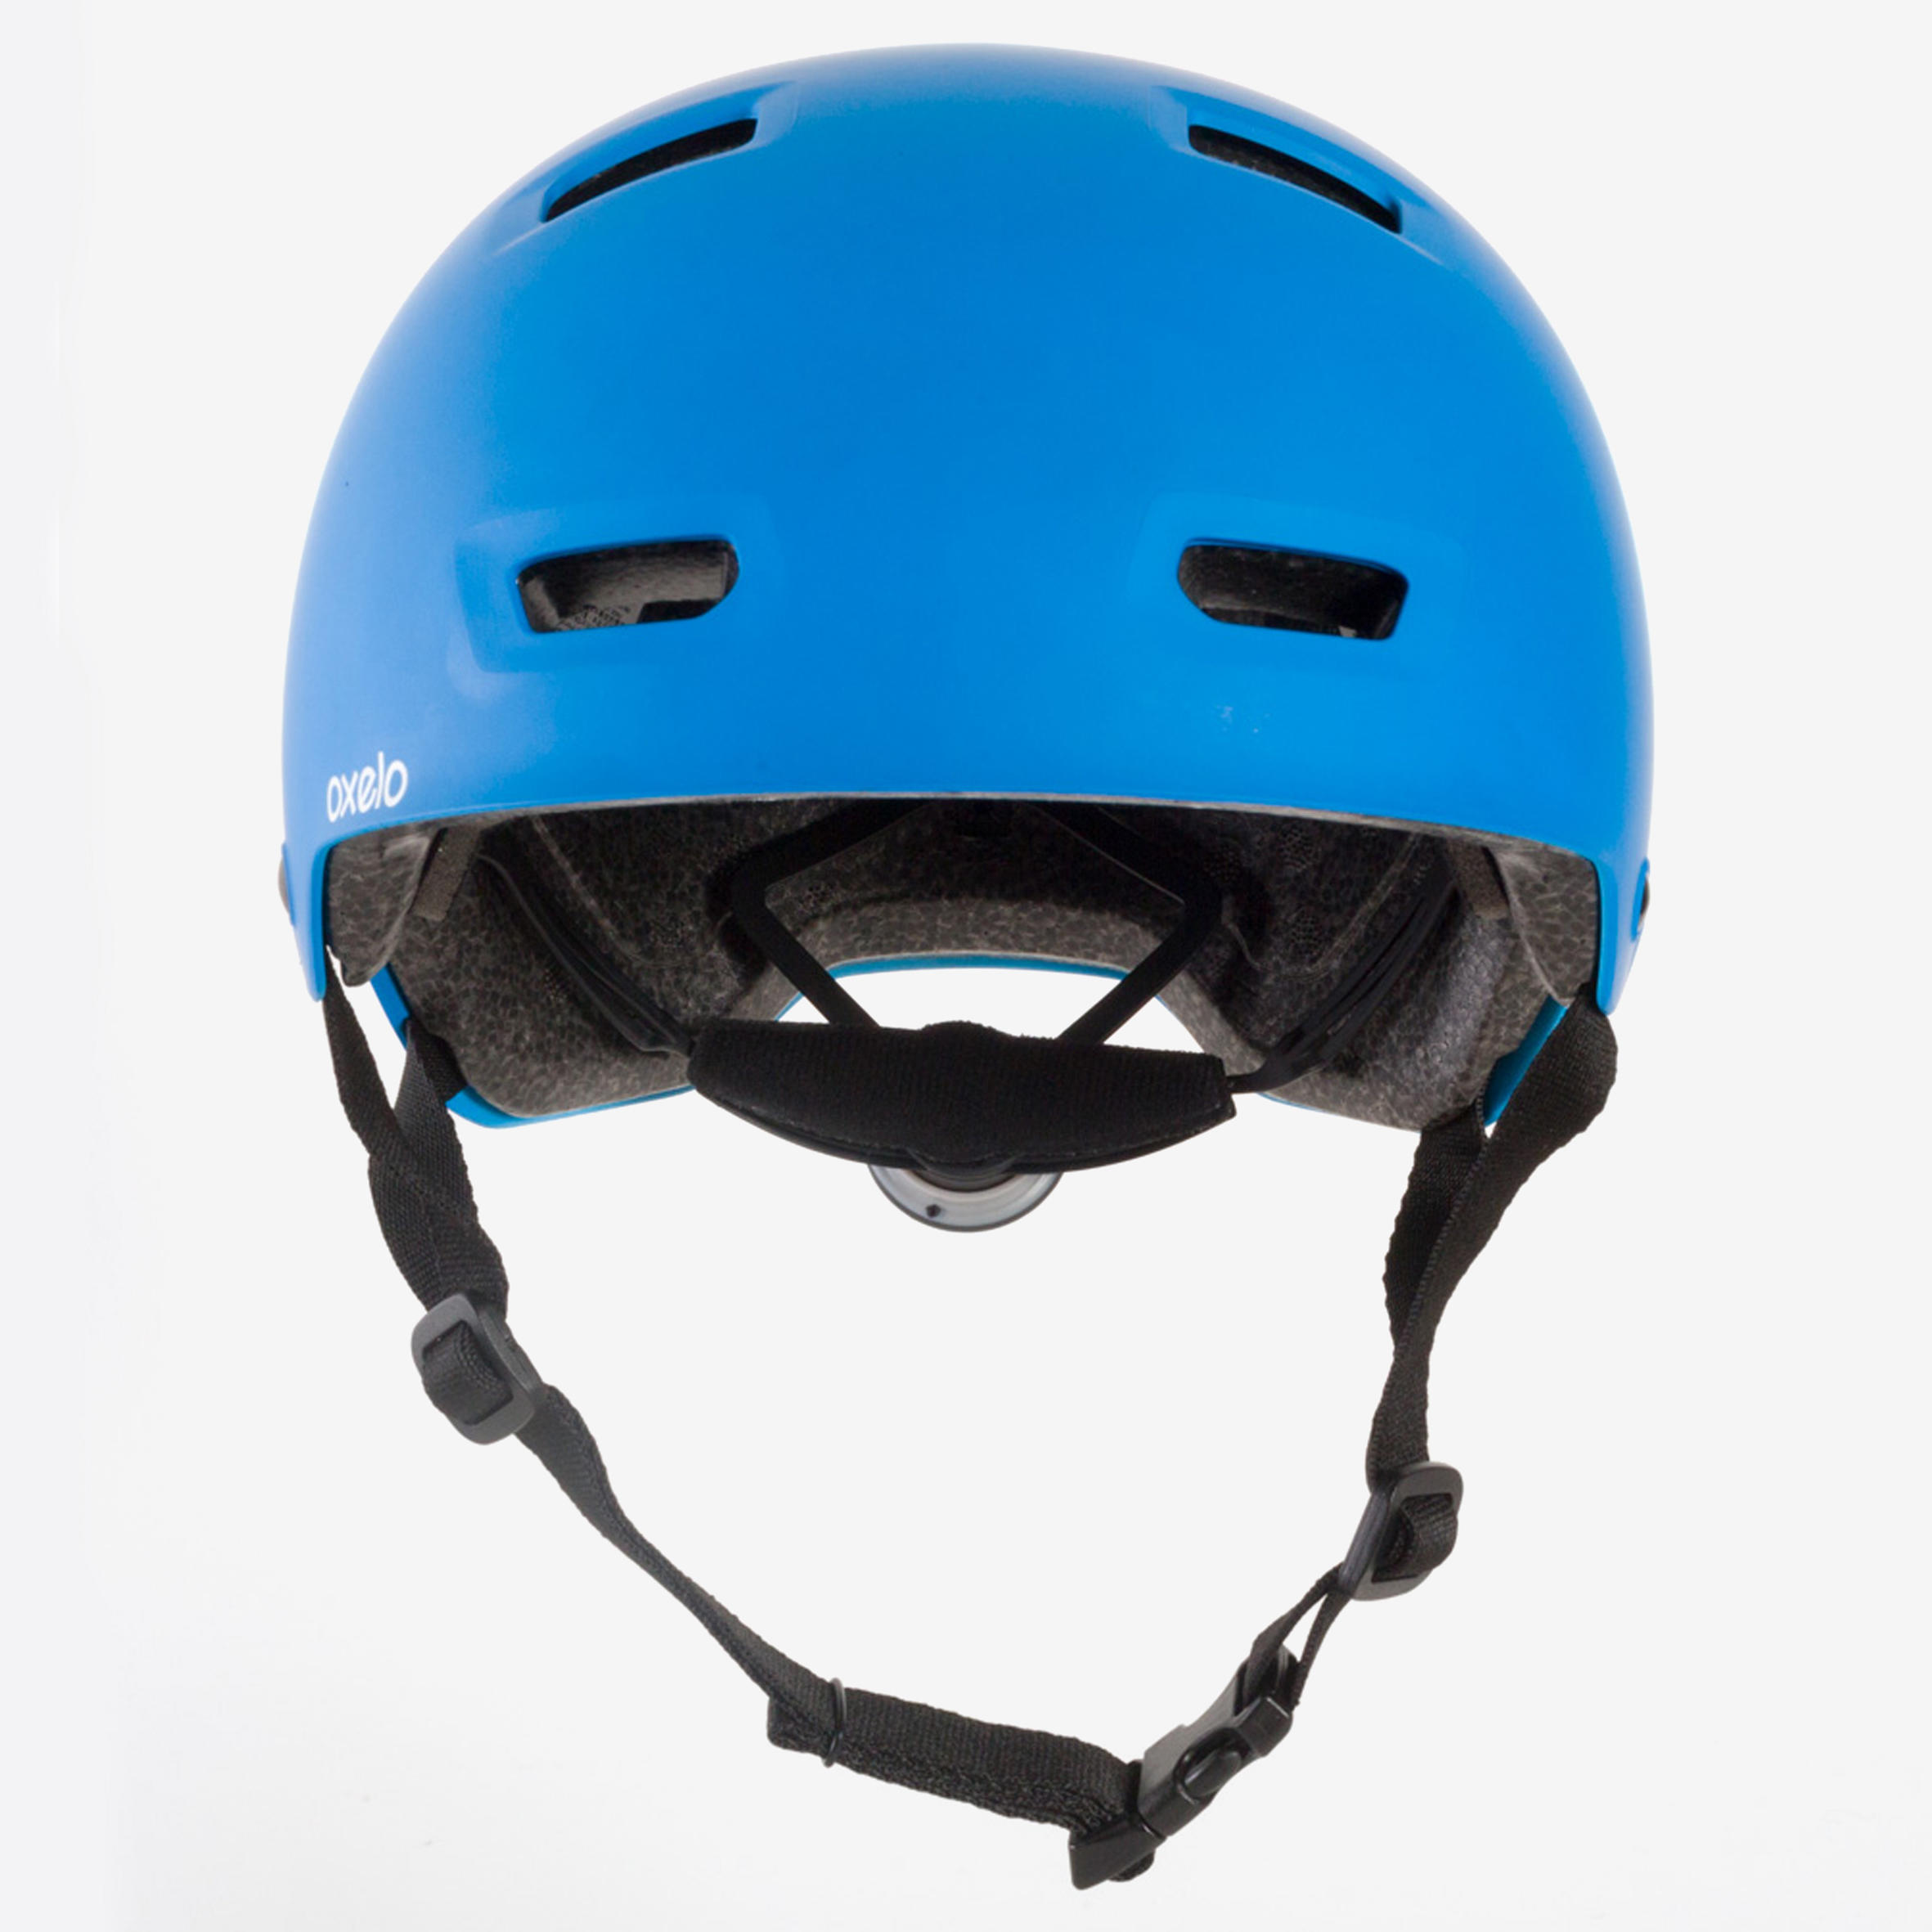 Adjustable Skate Helmet - MF 500 Blue - OXELO